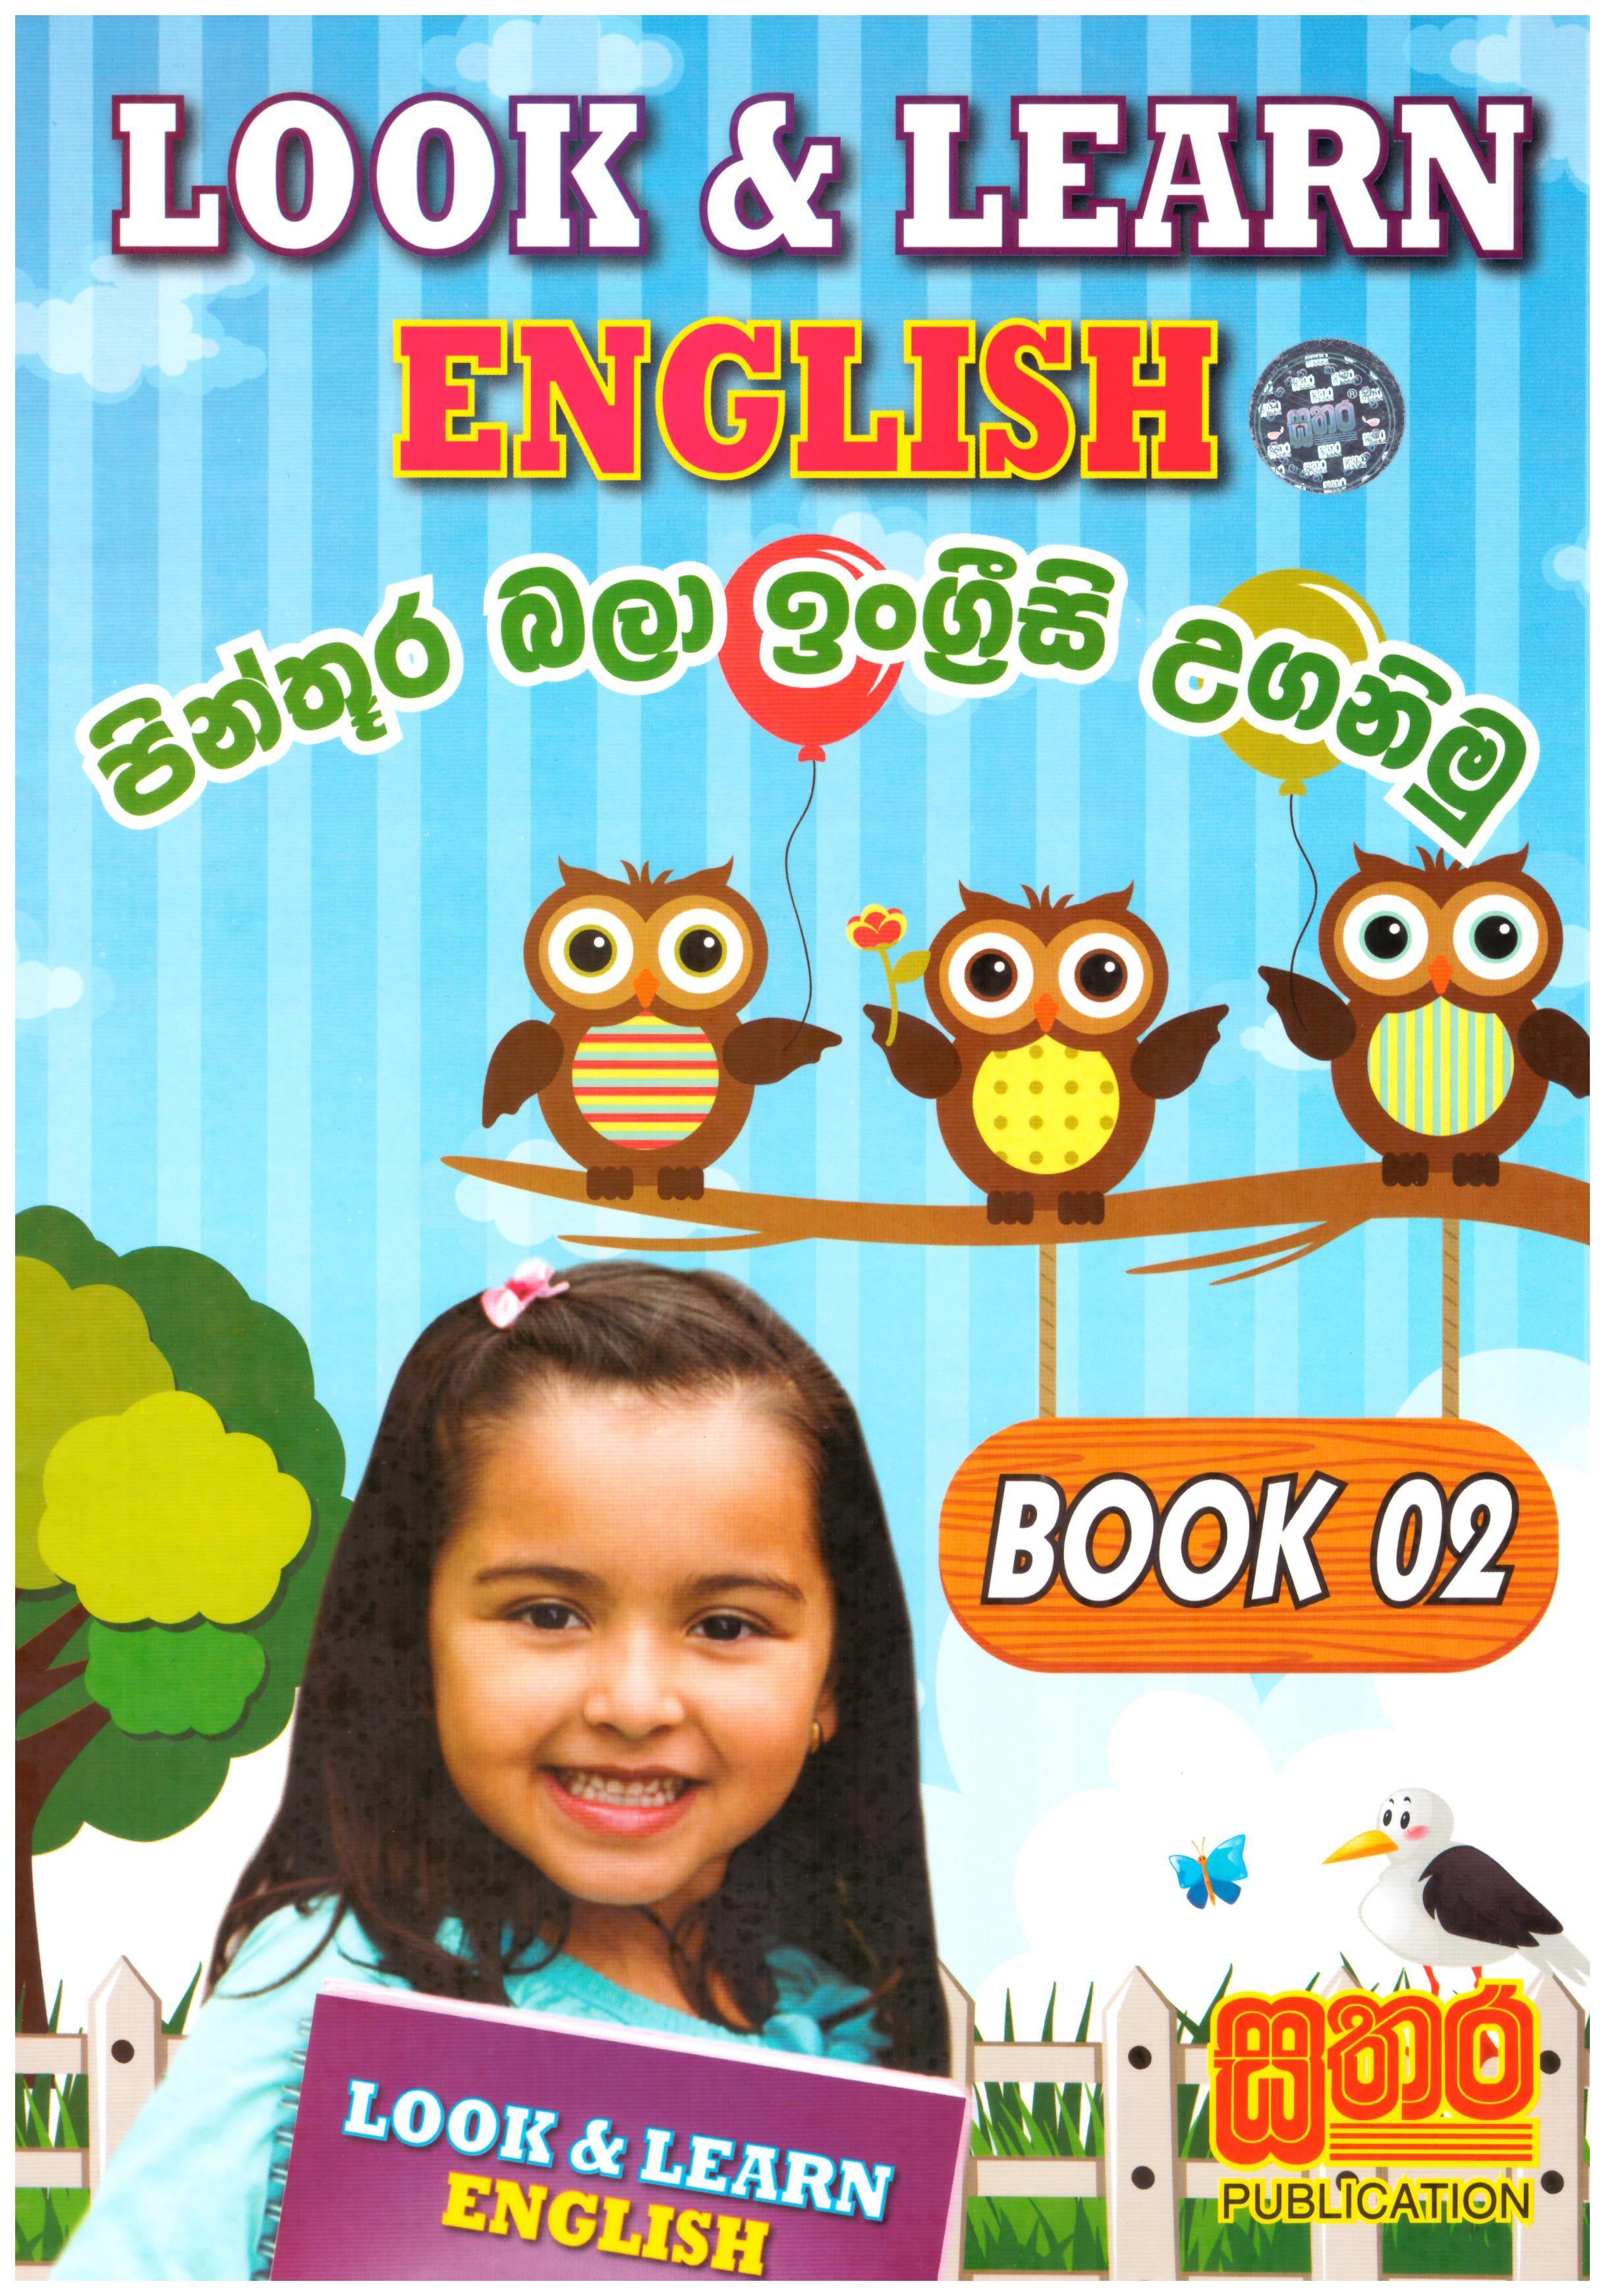 Look & learn English Book 02